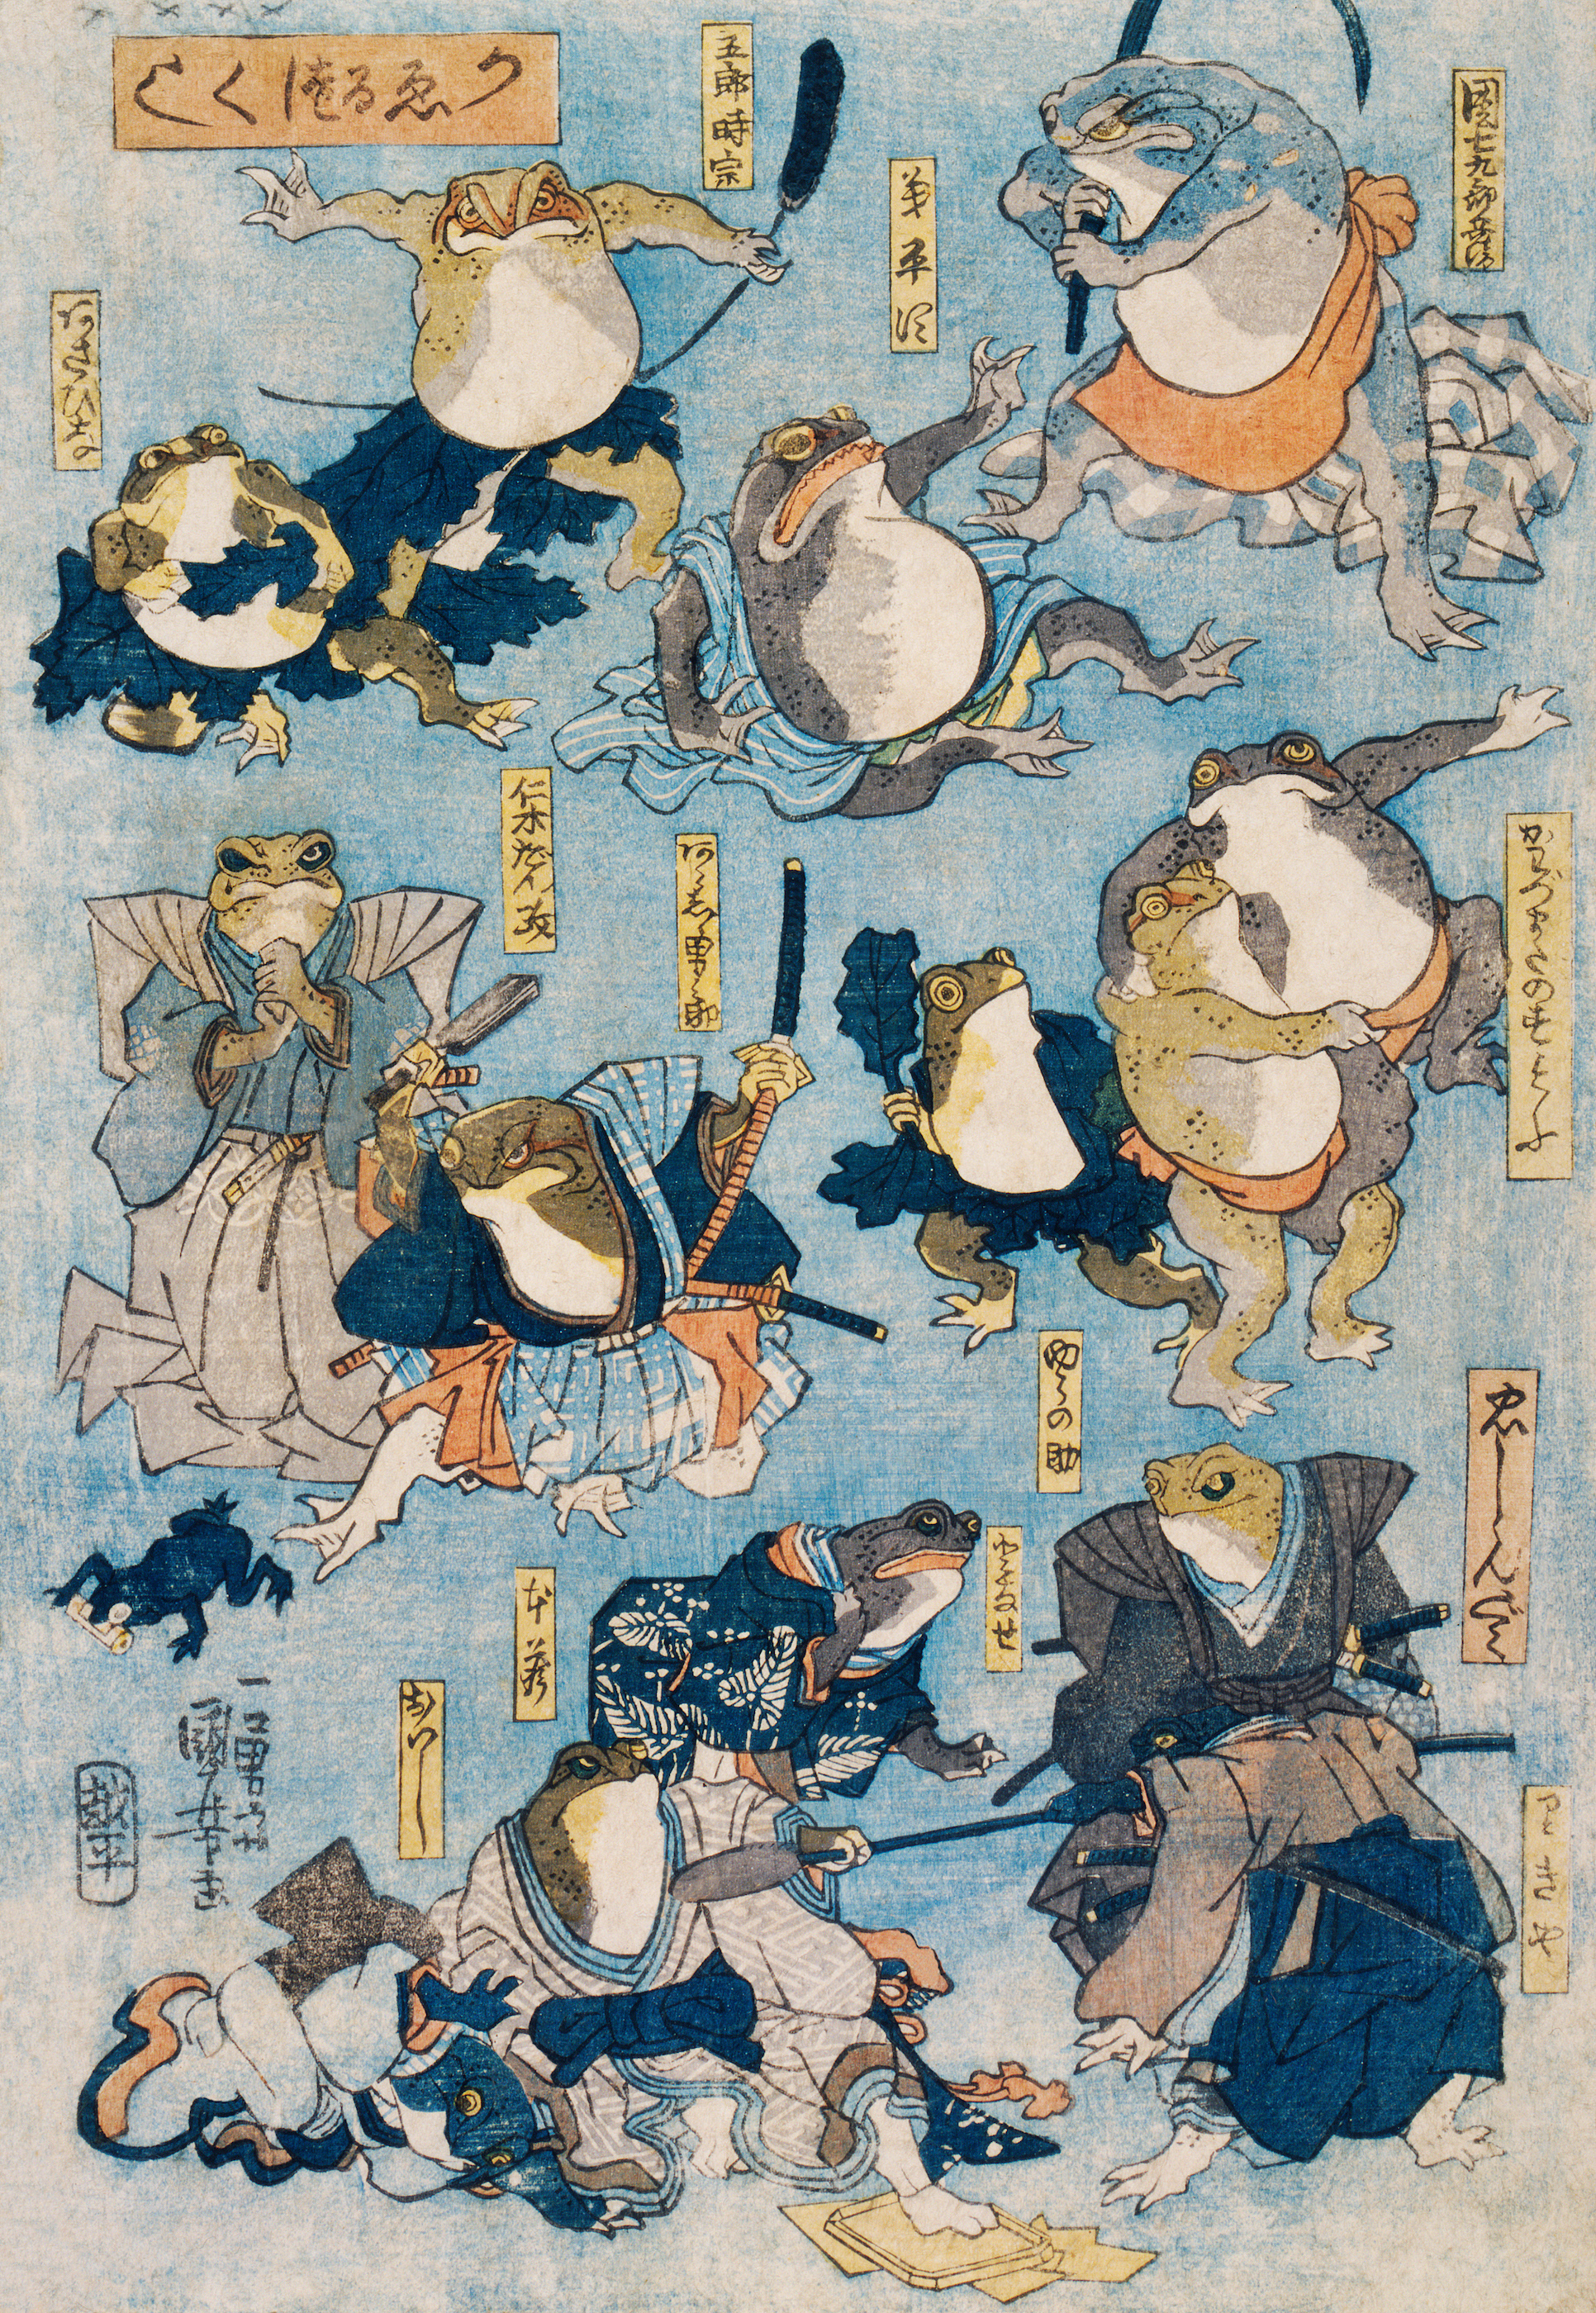 かゑるづくし by Utagawa Kuniyoshi - 1875年頃 